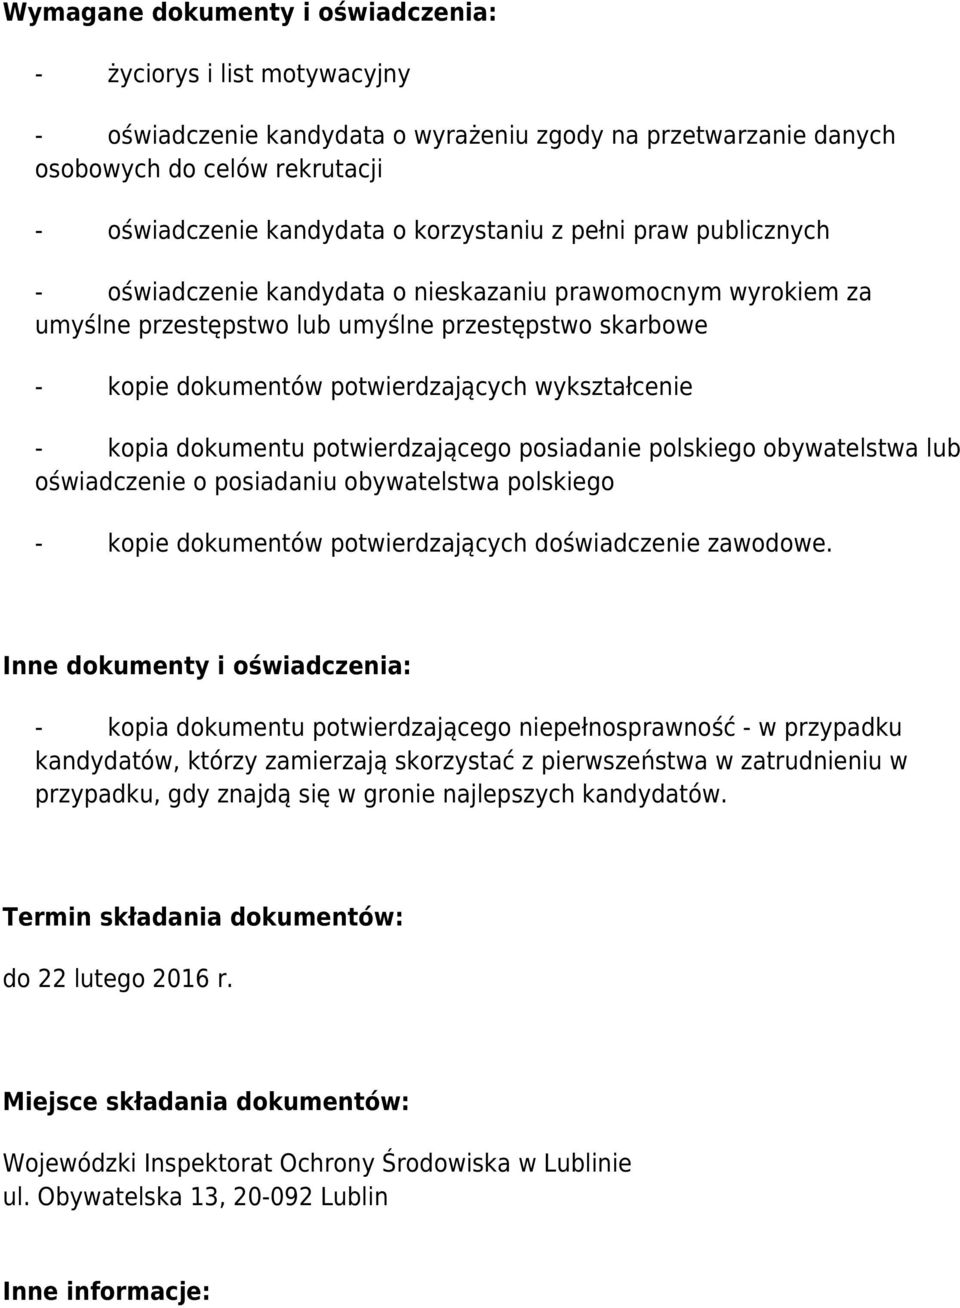 wykształcenie - kopia dokumentu potwierdzającego posiadanie polskiego obywatelstwa lub oświadczenie o posiadaniu obywatelstwa polskiego - kopie dokumentów potwierdzających doświadczenie zawodowe.